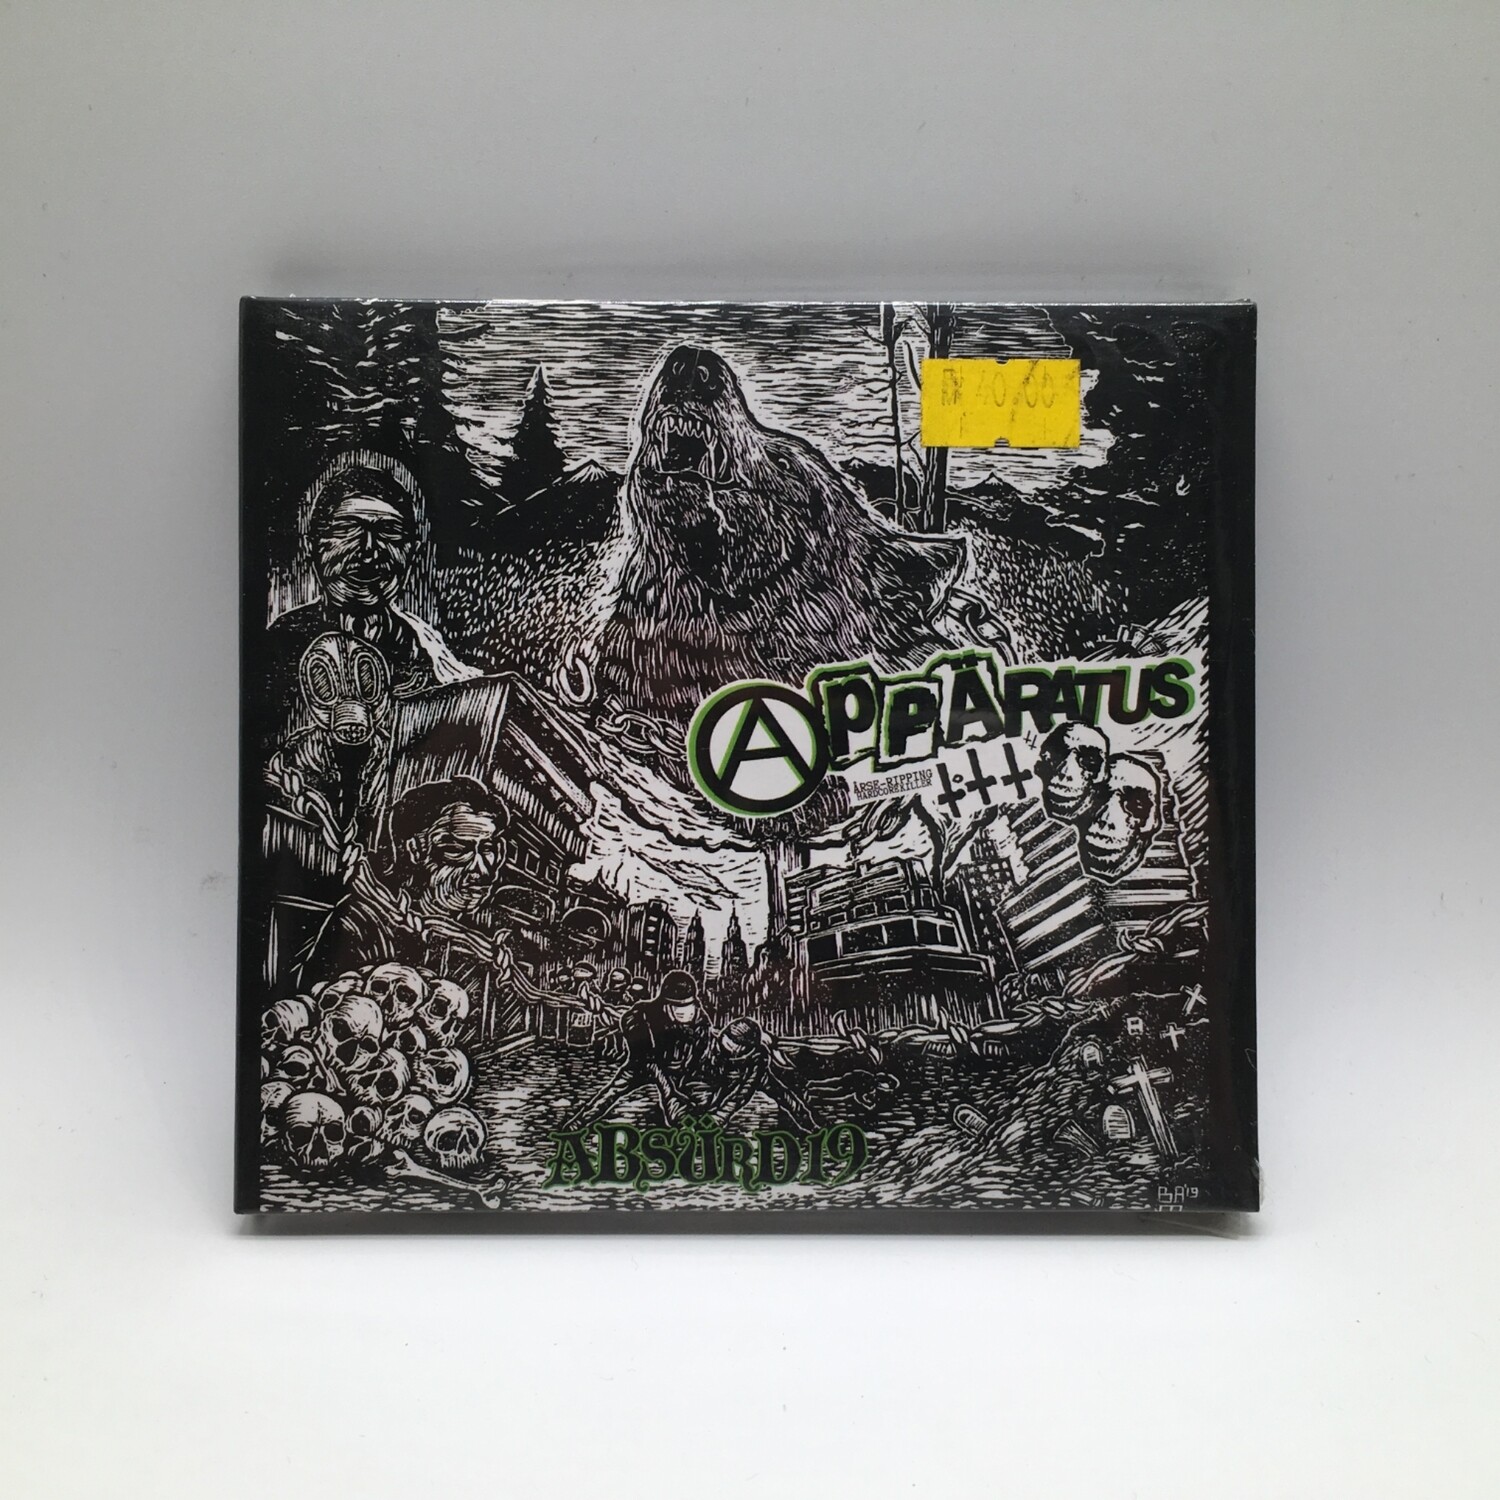 APPARATUS -ABSURD 19- CD